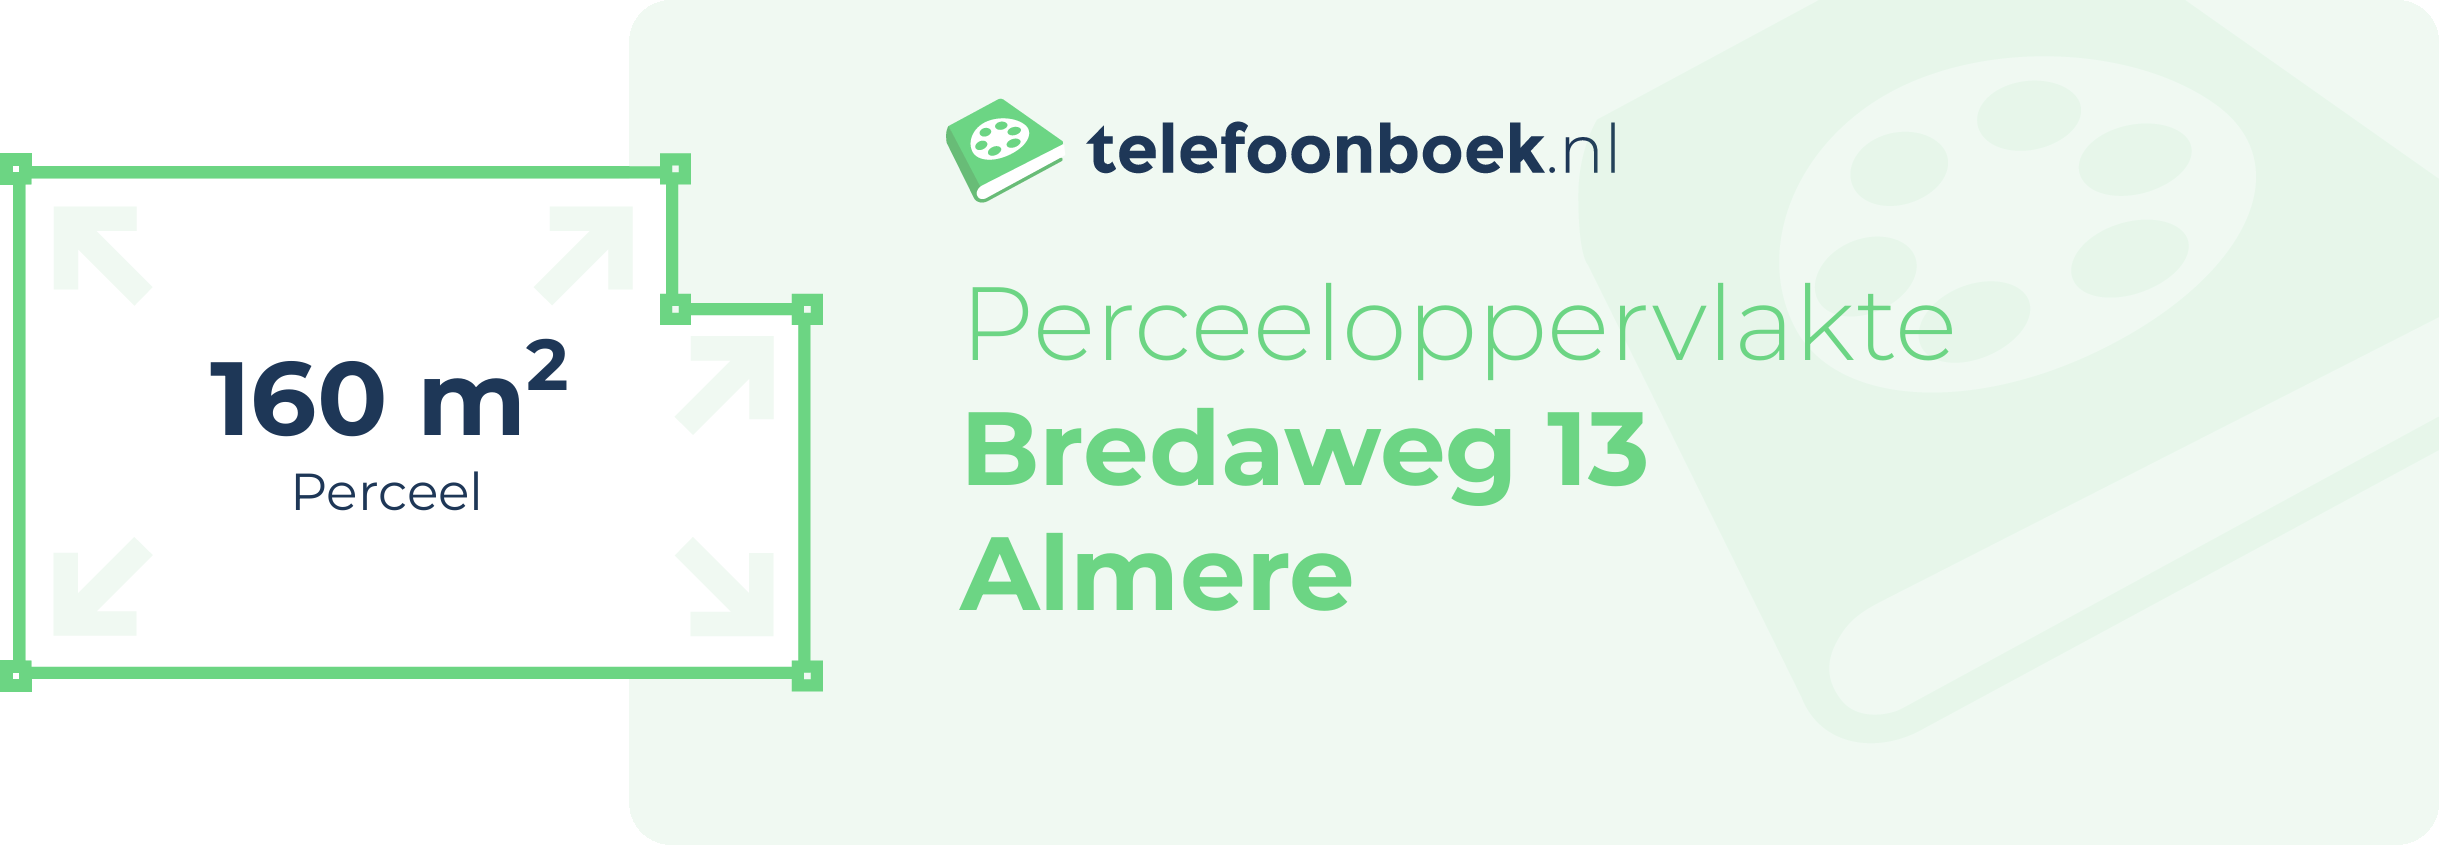 Perceeloppervlakte Bredaweg 13 Almere